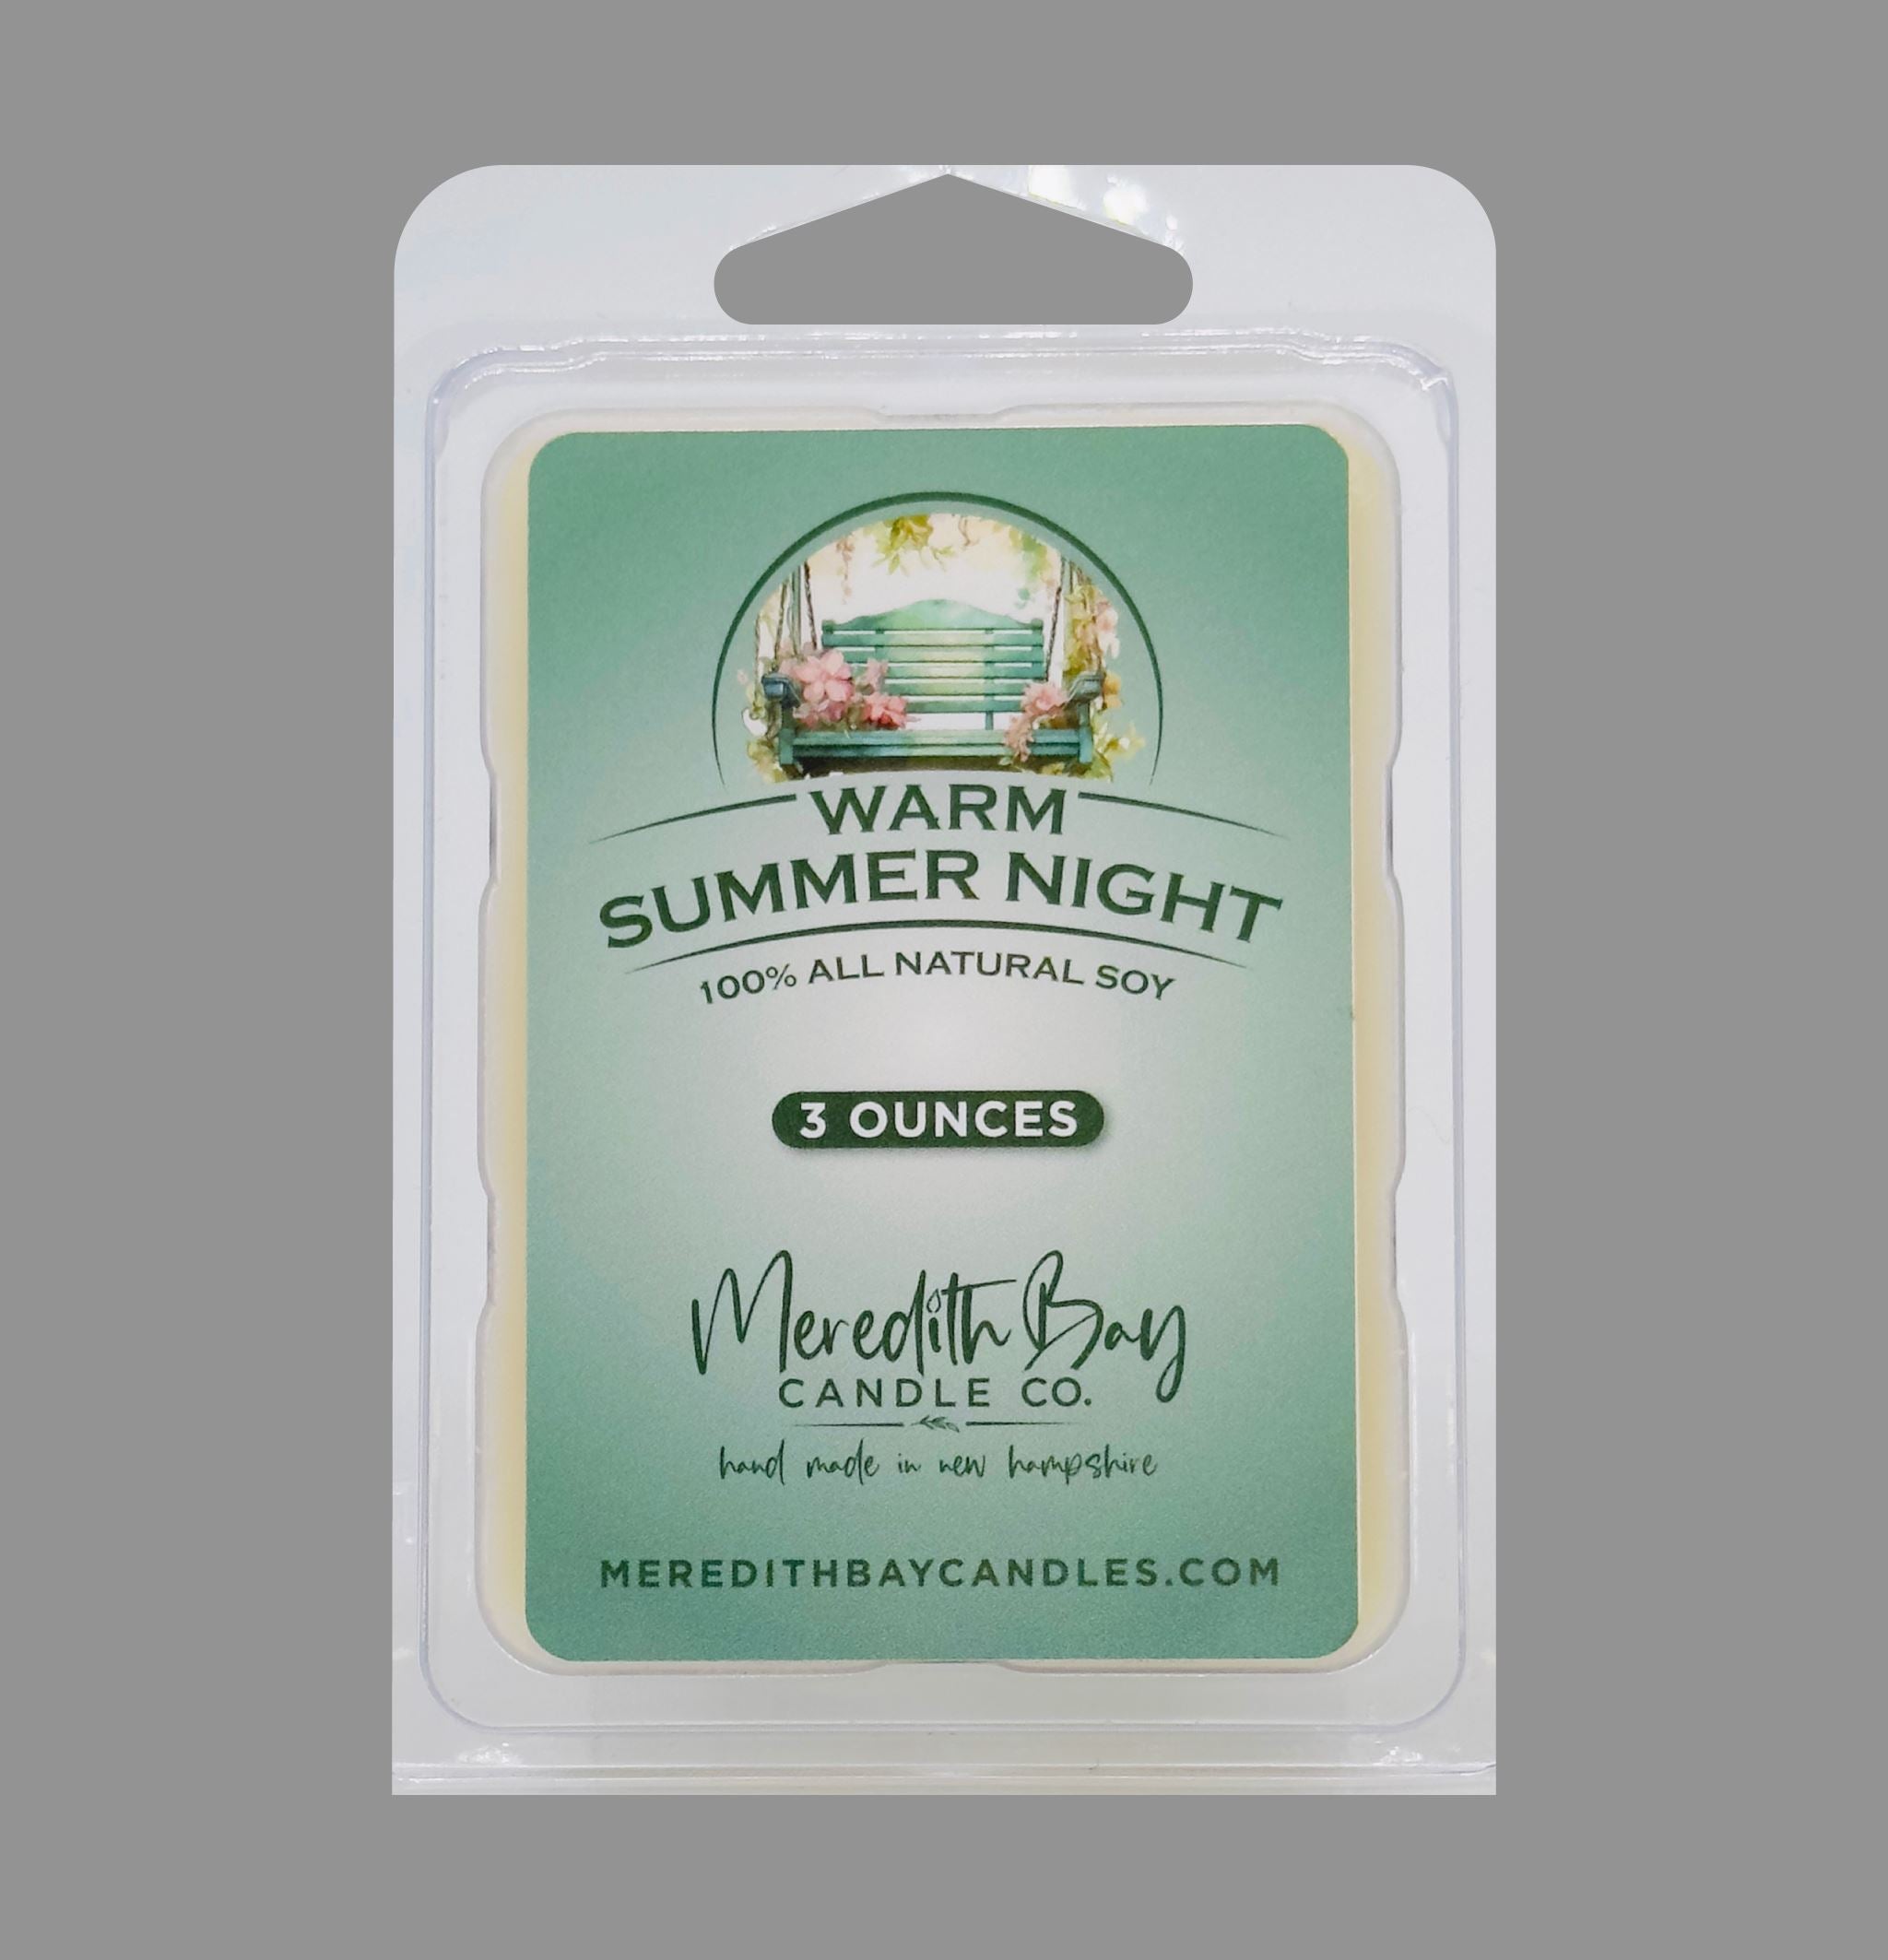 Warm Summer Night Wax Melt Meredith Bay Candle Co 